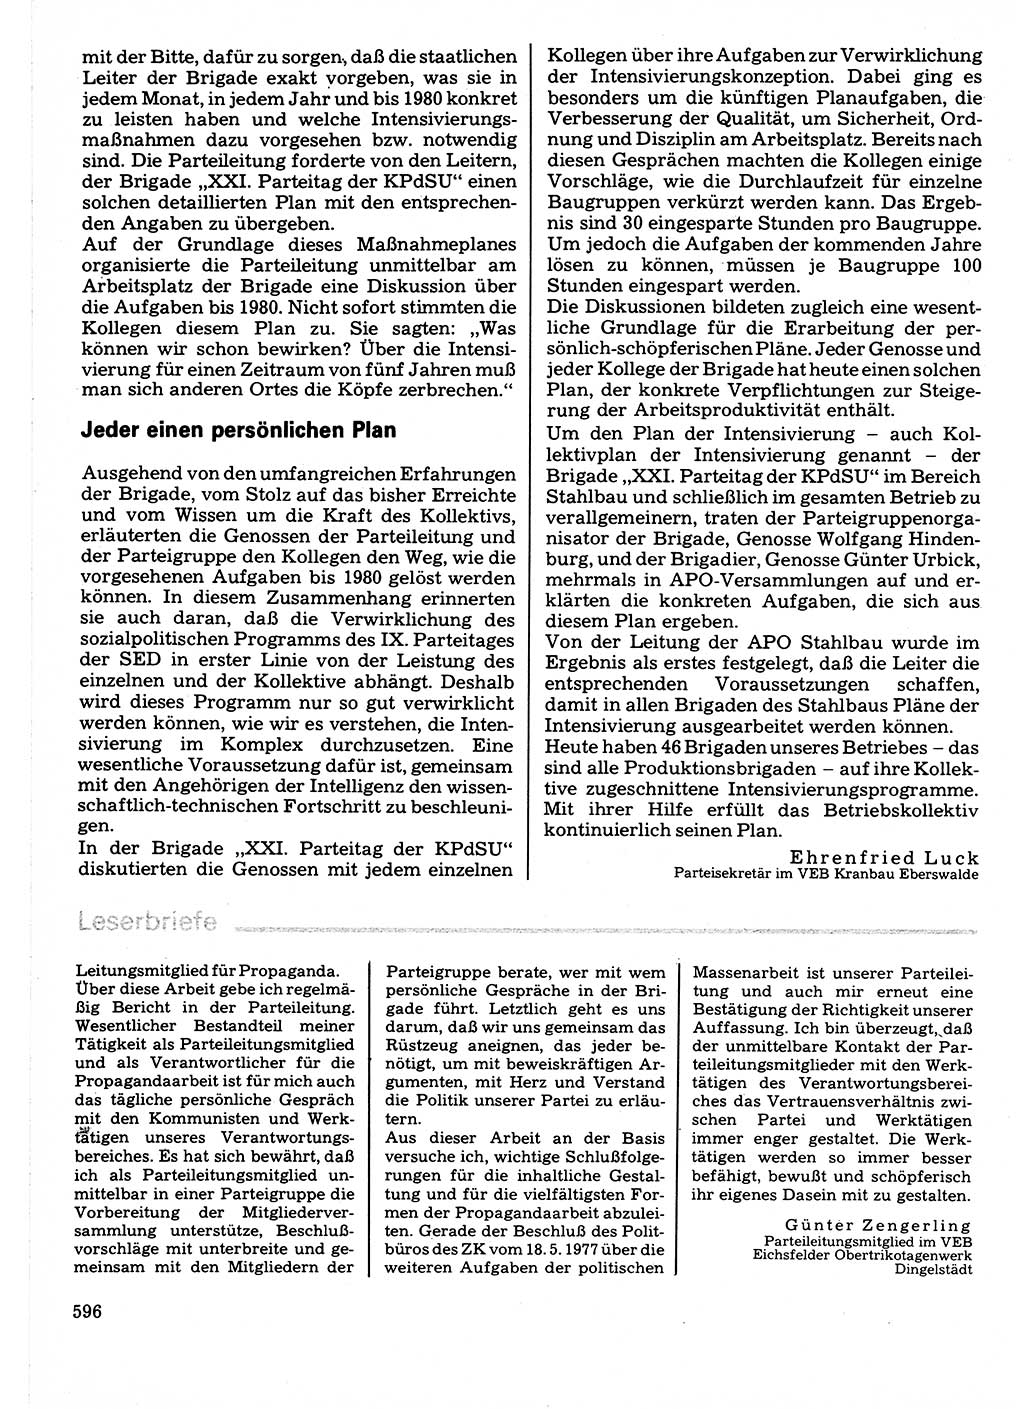 Neuer Weg (NW), Organ des Zentralkomitees (ZK) der SED (Sozialistische Einheitspartei Deutschlands) für Fragen des Parteilebens, 32. Jahrgang [Deutsche Demokratische Republik (DDR)] 1977, Seite 596 (NW ZK SED DDR 1977, S. 596)